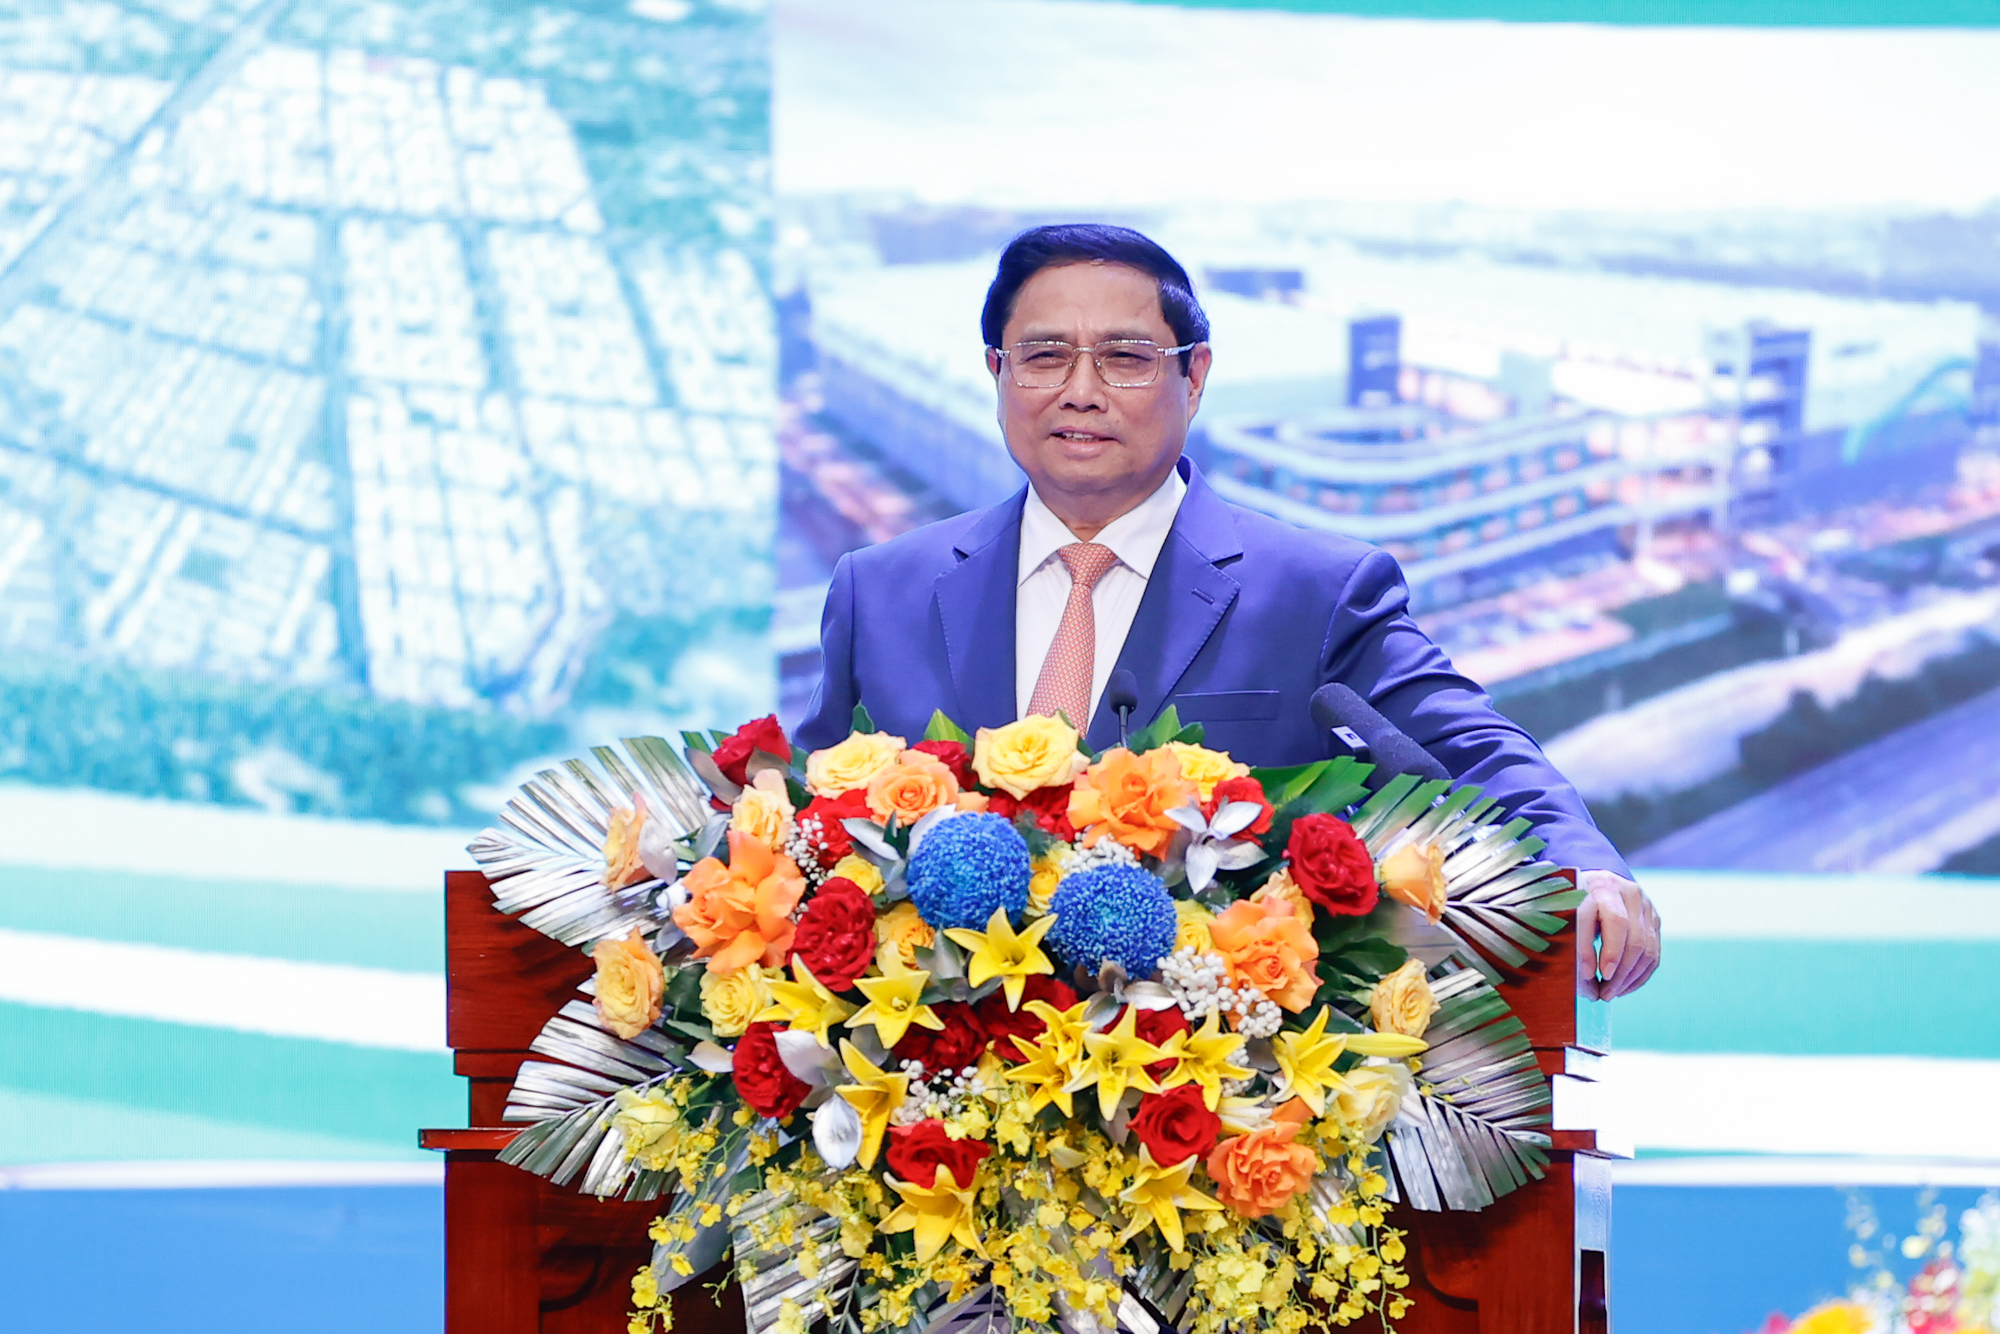 Thủ tướng Phạm Minh Chính nhấn mạnh, Tây Ninh có nhiều tiềm năng, lợi thế; hội đủ 3 yếu tố ""thiên thời, địa lợi, nhân hòa" để tăng tốc phát triển nhanh, bền vững - Ảnh: VGP/Nhật Bắc